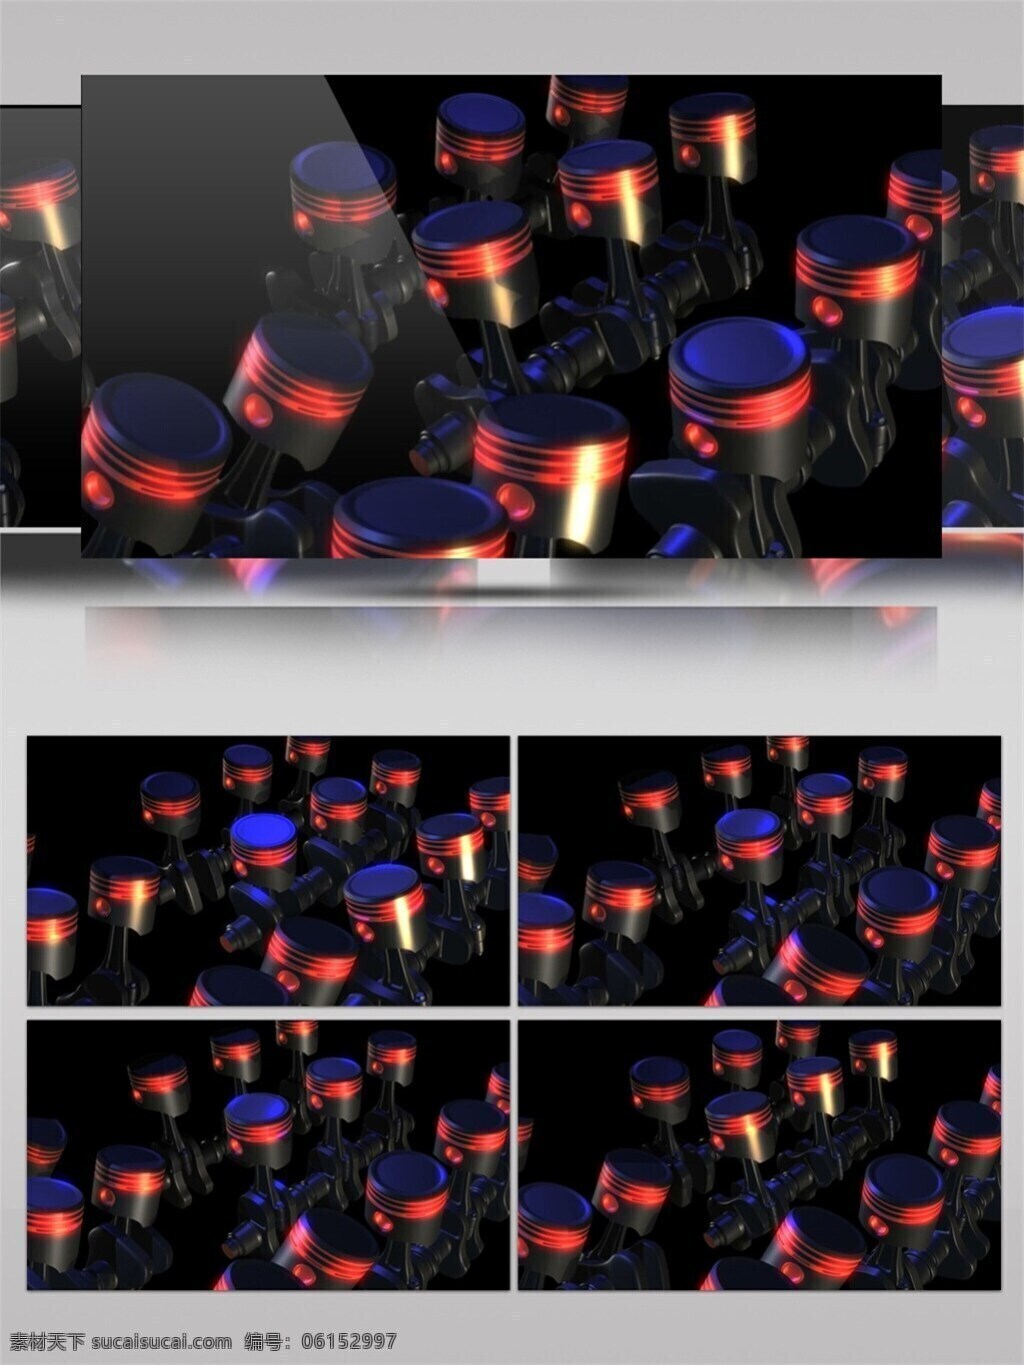 炫 酷 led 红光 高清 视频 3d视频素材 电脑屏幕保护 高清视频素材 光斑散射 光特效 红光led 华丽灯光 视觉享受 手机壁纸 特效视频素材